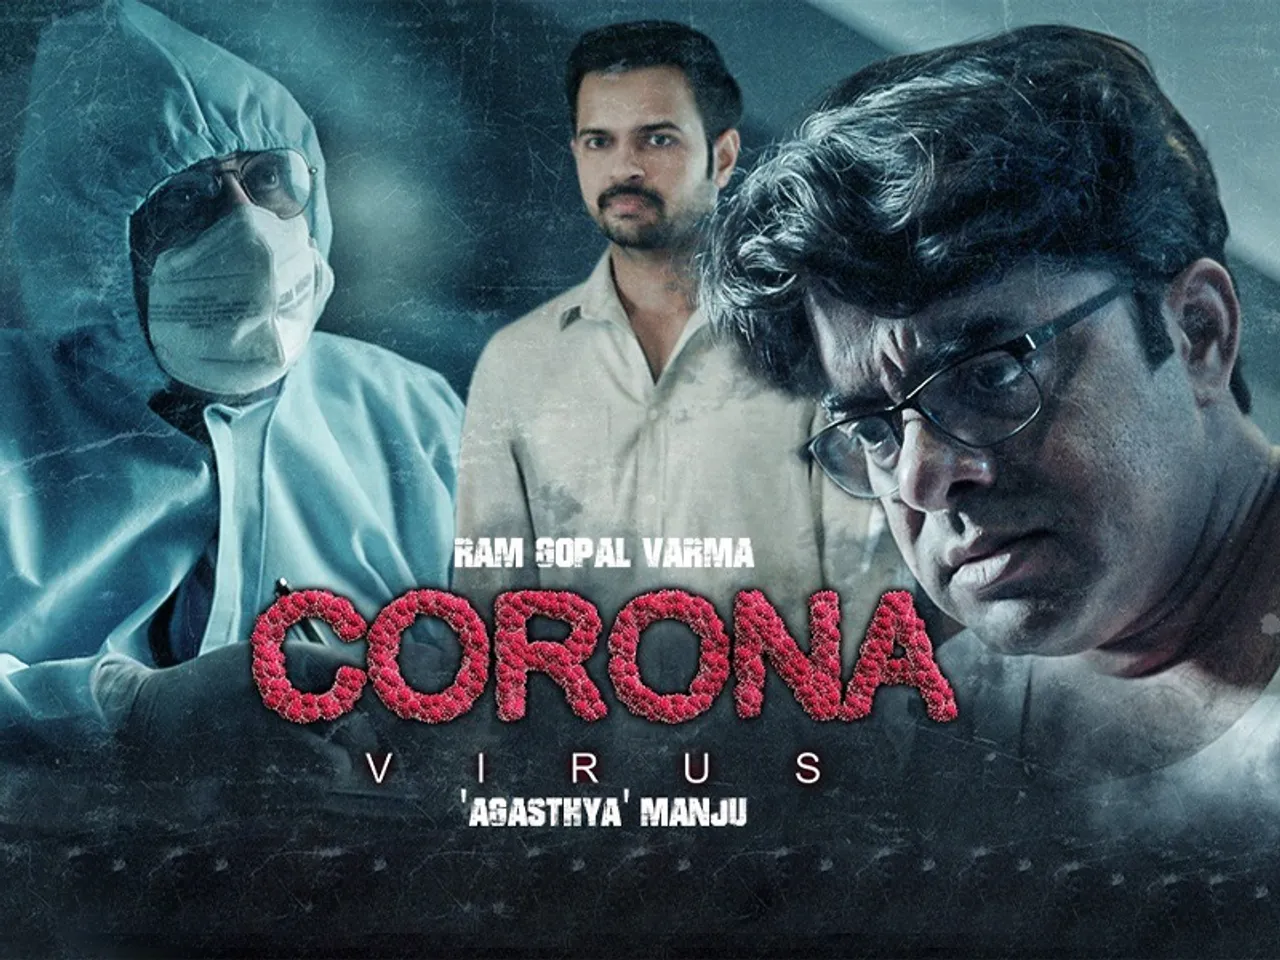 नियमों को ताक पर रखकर लॉकडाऊन में हुई राम गोपाल वर्मा की कोरोनावायरस पर फिल्म की शूटिंग? फेडरेशन भेजेगा नोटिस